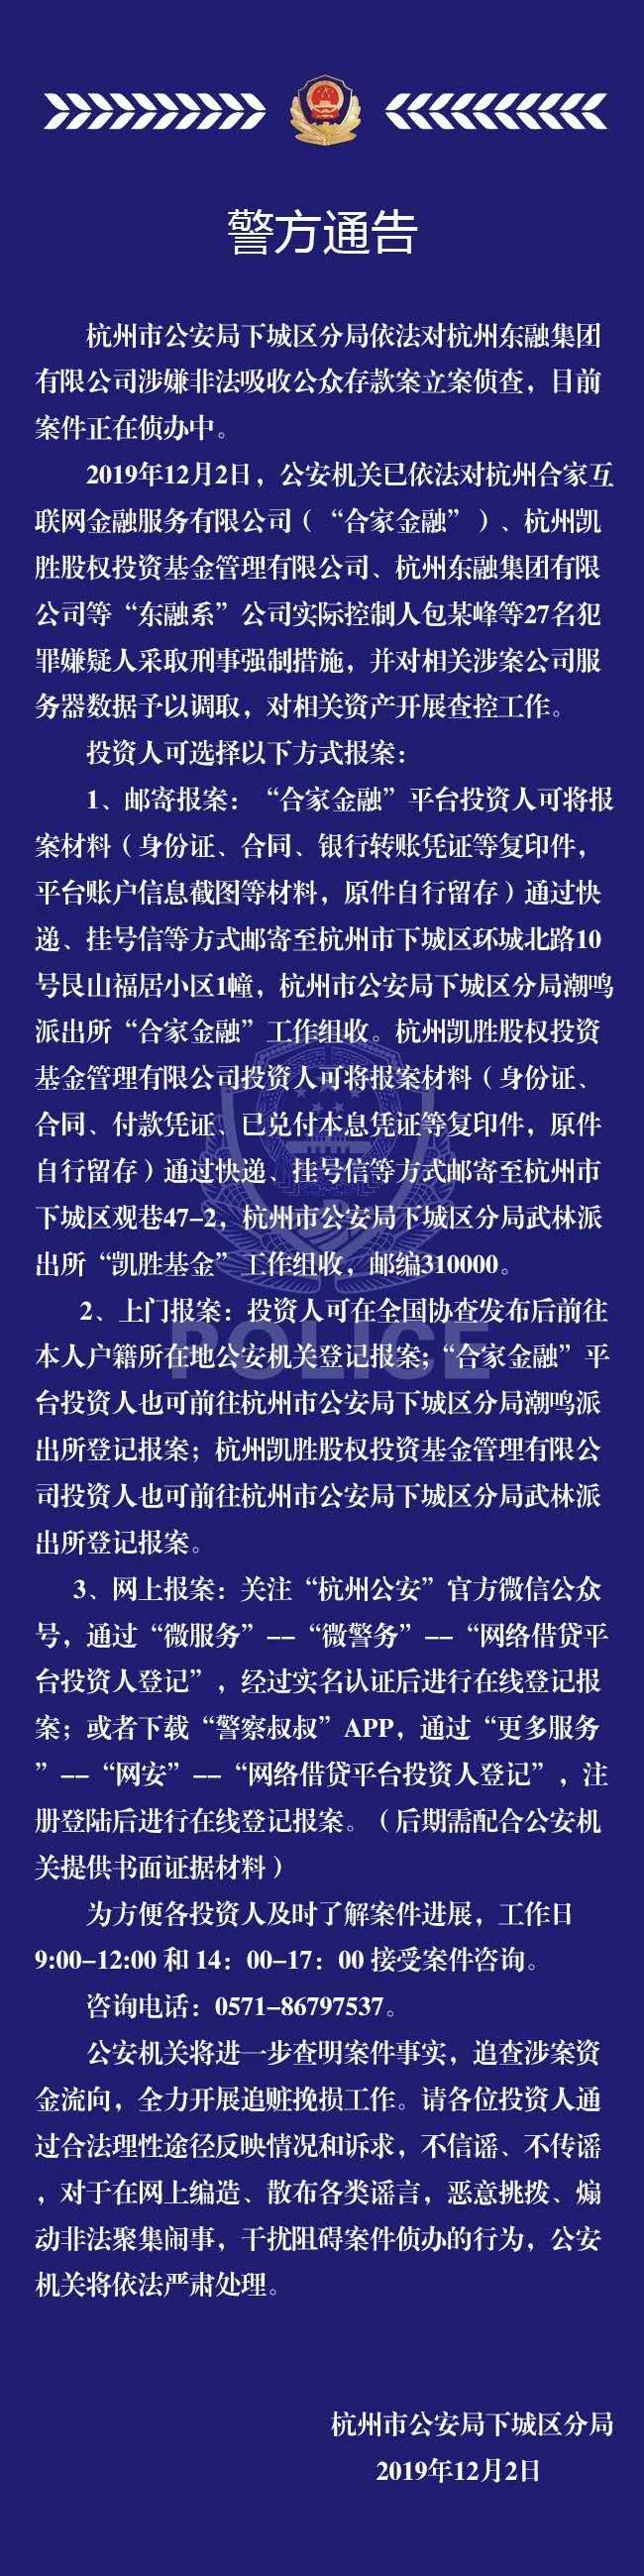 杭州又一平台合家金融被立案侦查:逮捕27名犯罪嫌疑人